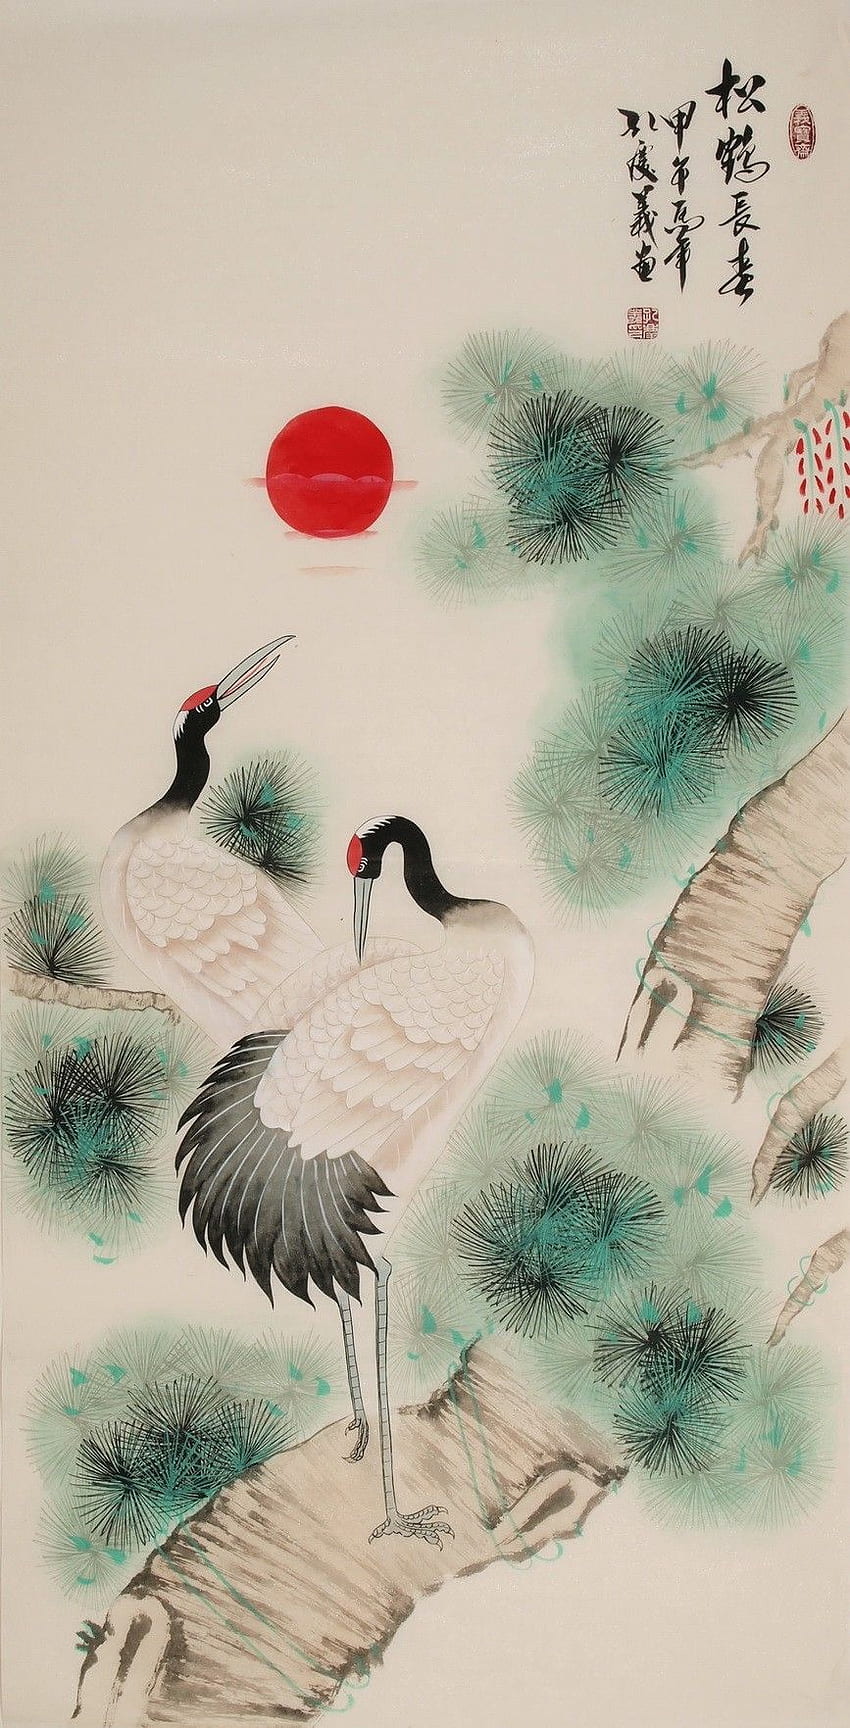 クレーン - CNAG000526。 絵画・中国画・中国筆・鶴鳥図 HD電話の壁紙